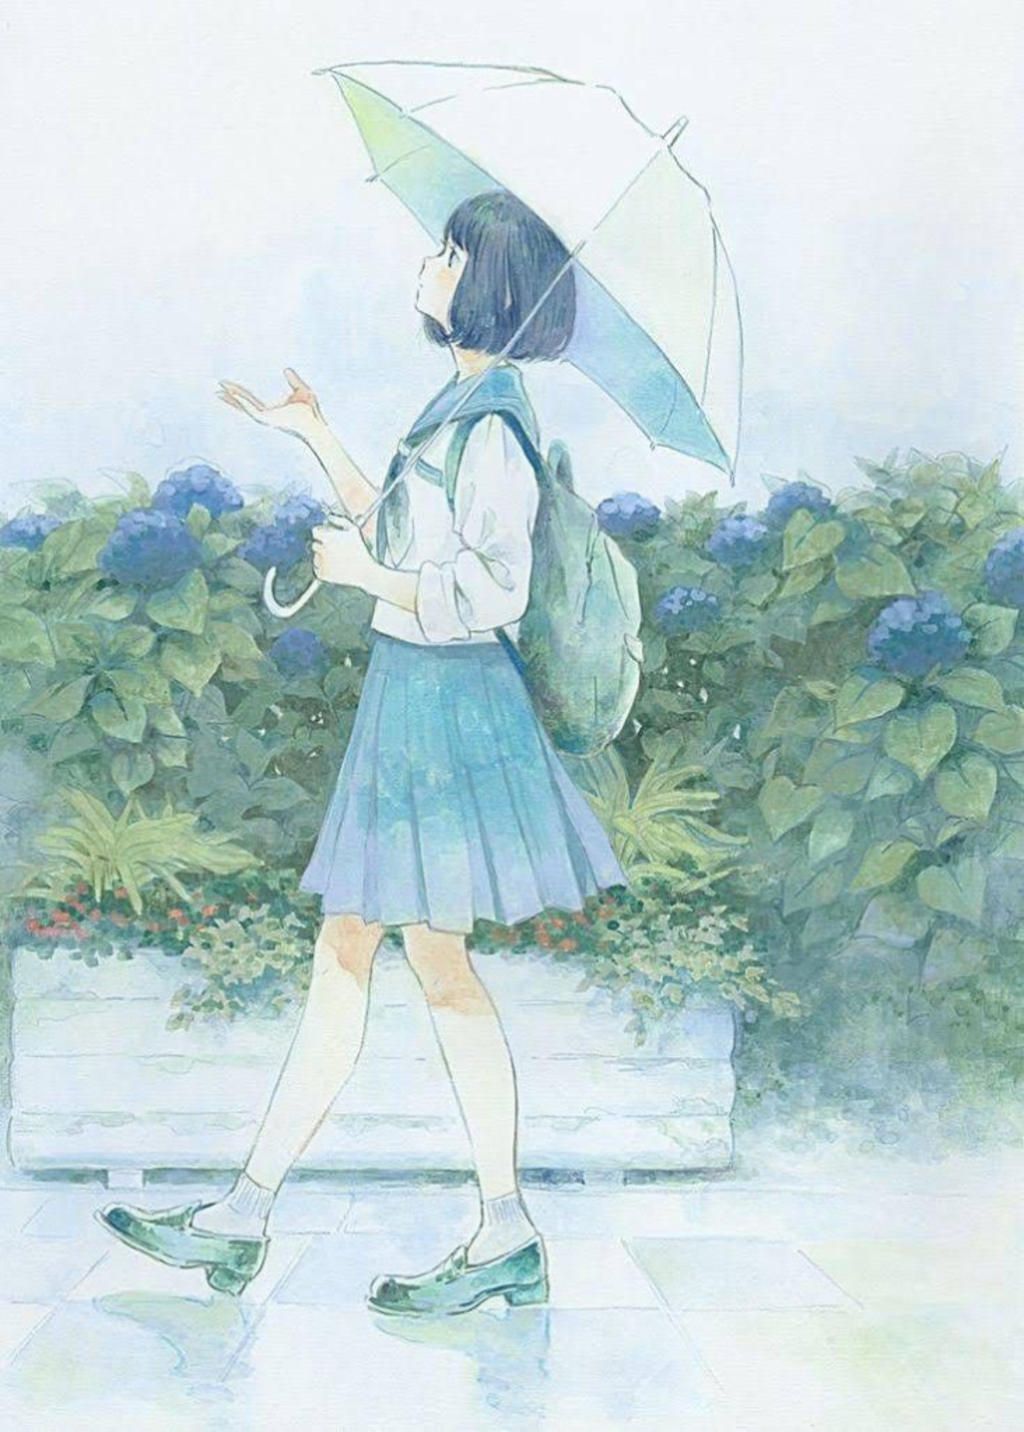 Một tác phẩm anime đầy màu sắc với hình ảnh về một người đang cầm một cây ô đang chờ đón bạn tại gian hàng. Sự kết hợp tài hoa giữa họa sĩ và nhà sản xuất anime sẽ đem lại cho bạn những giây phút thư giãn tuyệt vời và đầy sức hút.